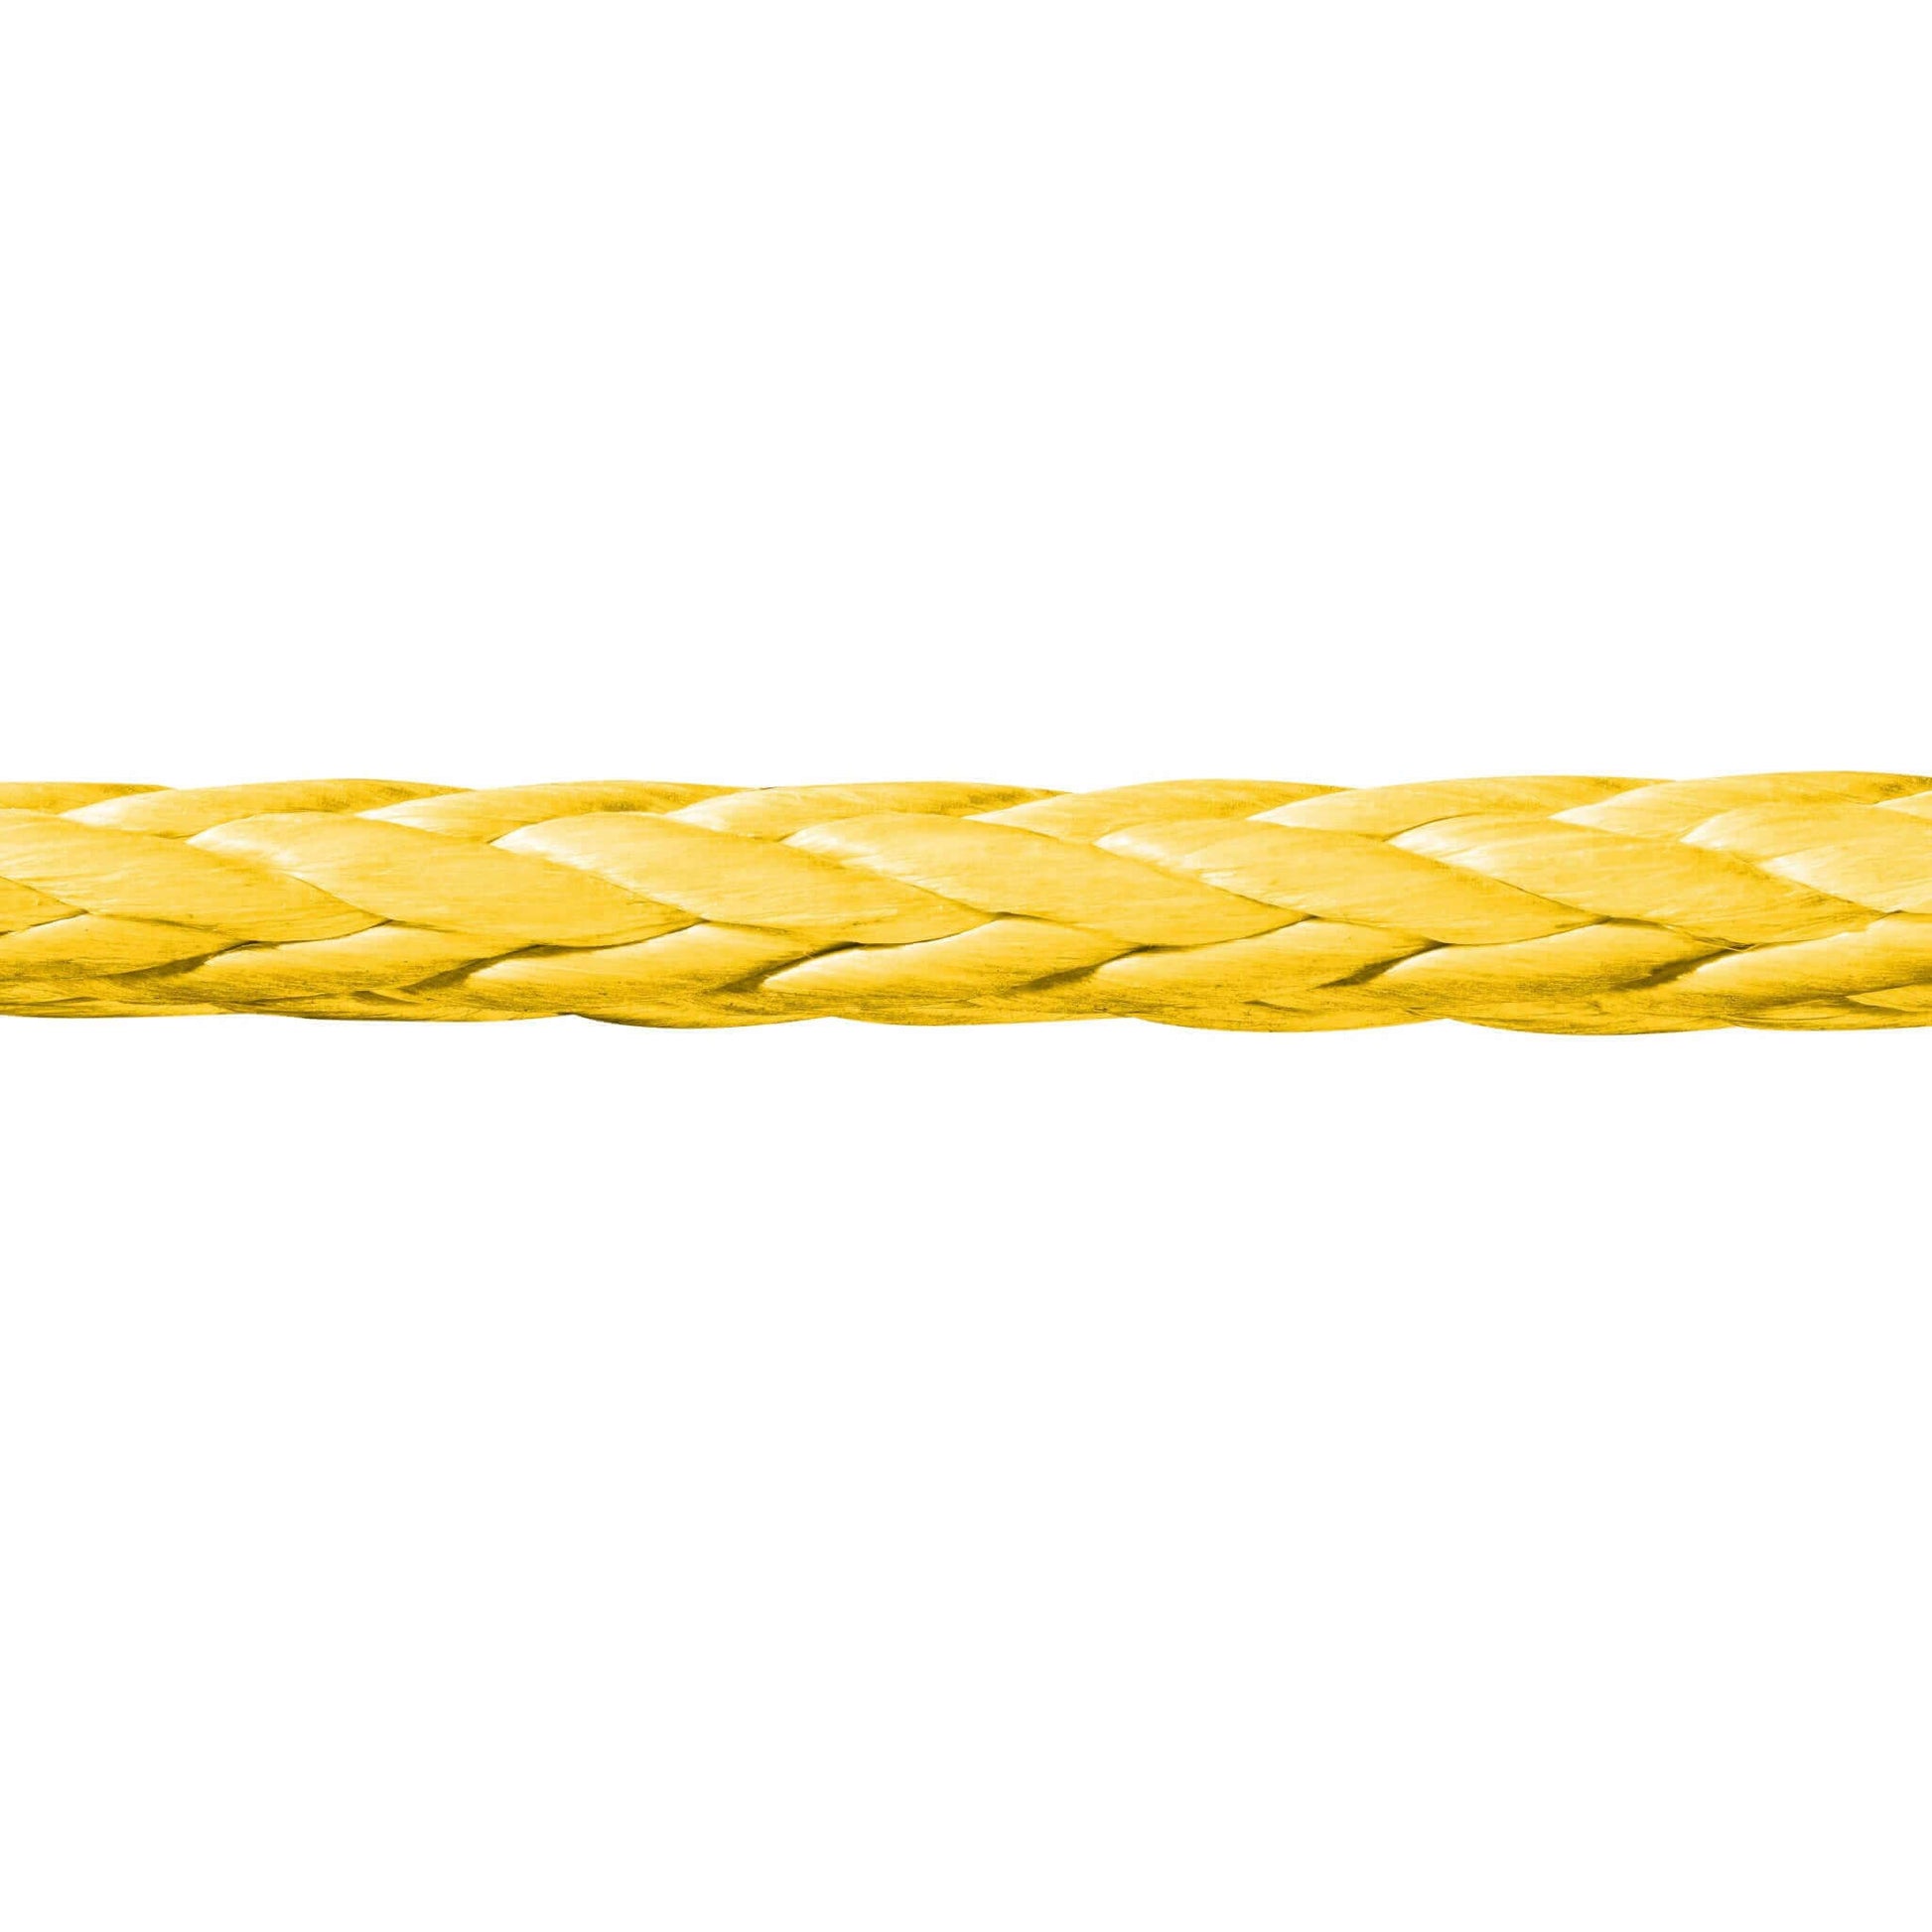 Novoleen® Pu12 Zugseilverlängerungen von Seilflechter - Vielseitige Lösung zur Seilverlängerung. Erhältlich in verschiedenen Längen und Durchmessern. Mit Augspleiß an beiden Enden für einfache Verbindung mit Beschlagteilen oder Tauwerkschäkeln. Ideal für Windenseile, Greifzüge im Forst und mehr.